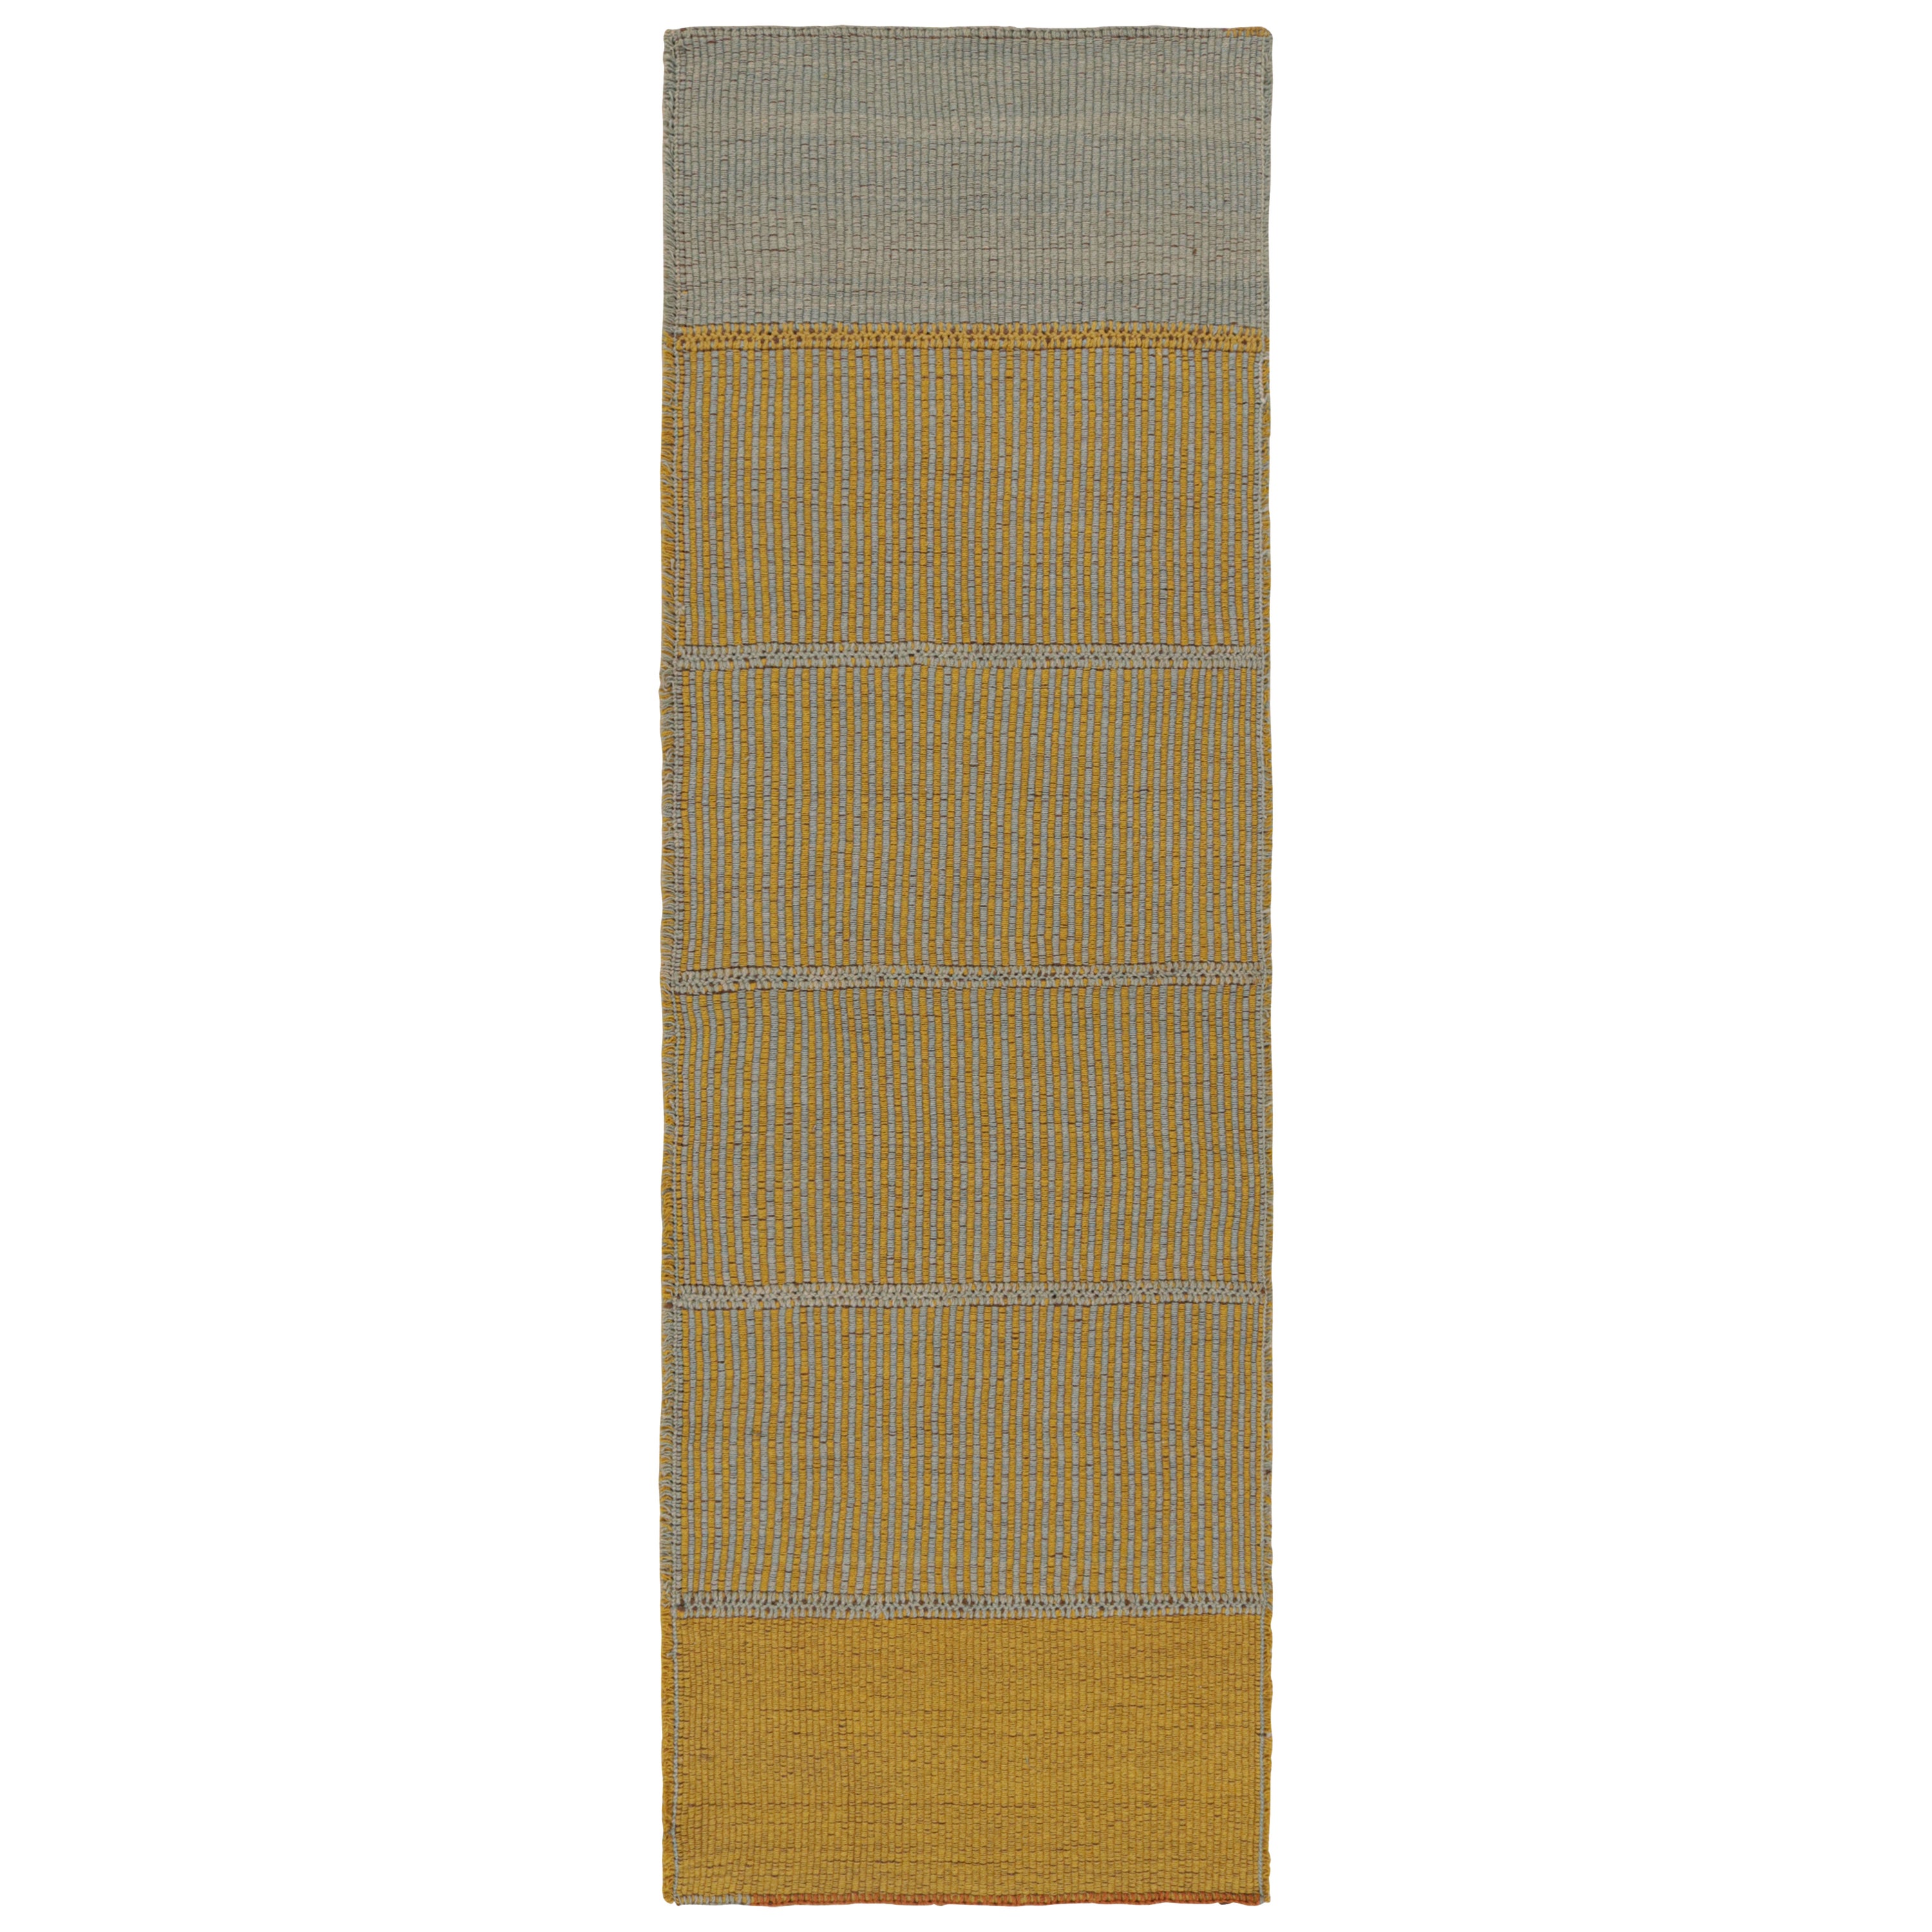 Rug & Kilim's Contemporary Kilim in Gold and Blue Stripes with Brown accents (Kilim contemporain avec des rayures or et bleues et des accents bruns) en vente